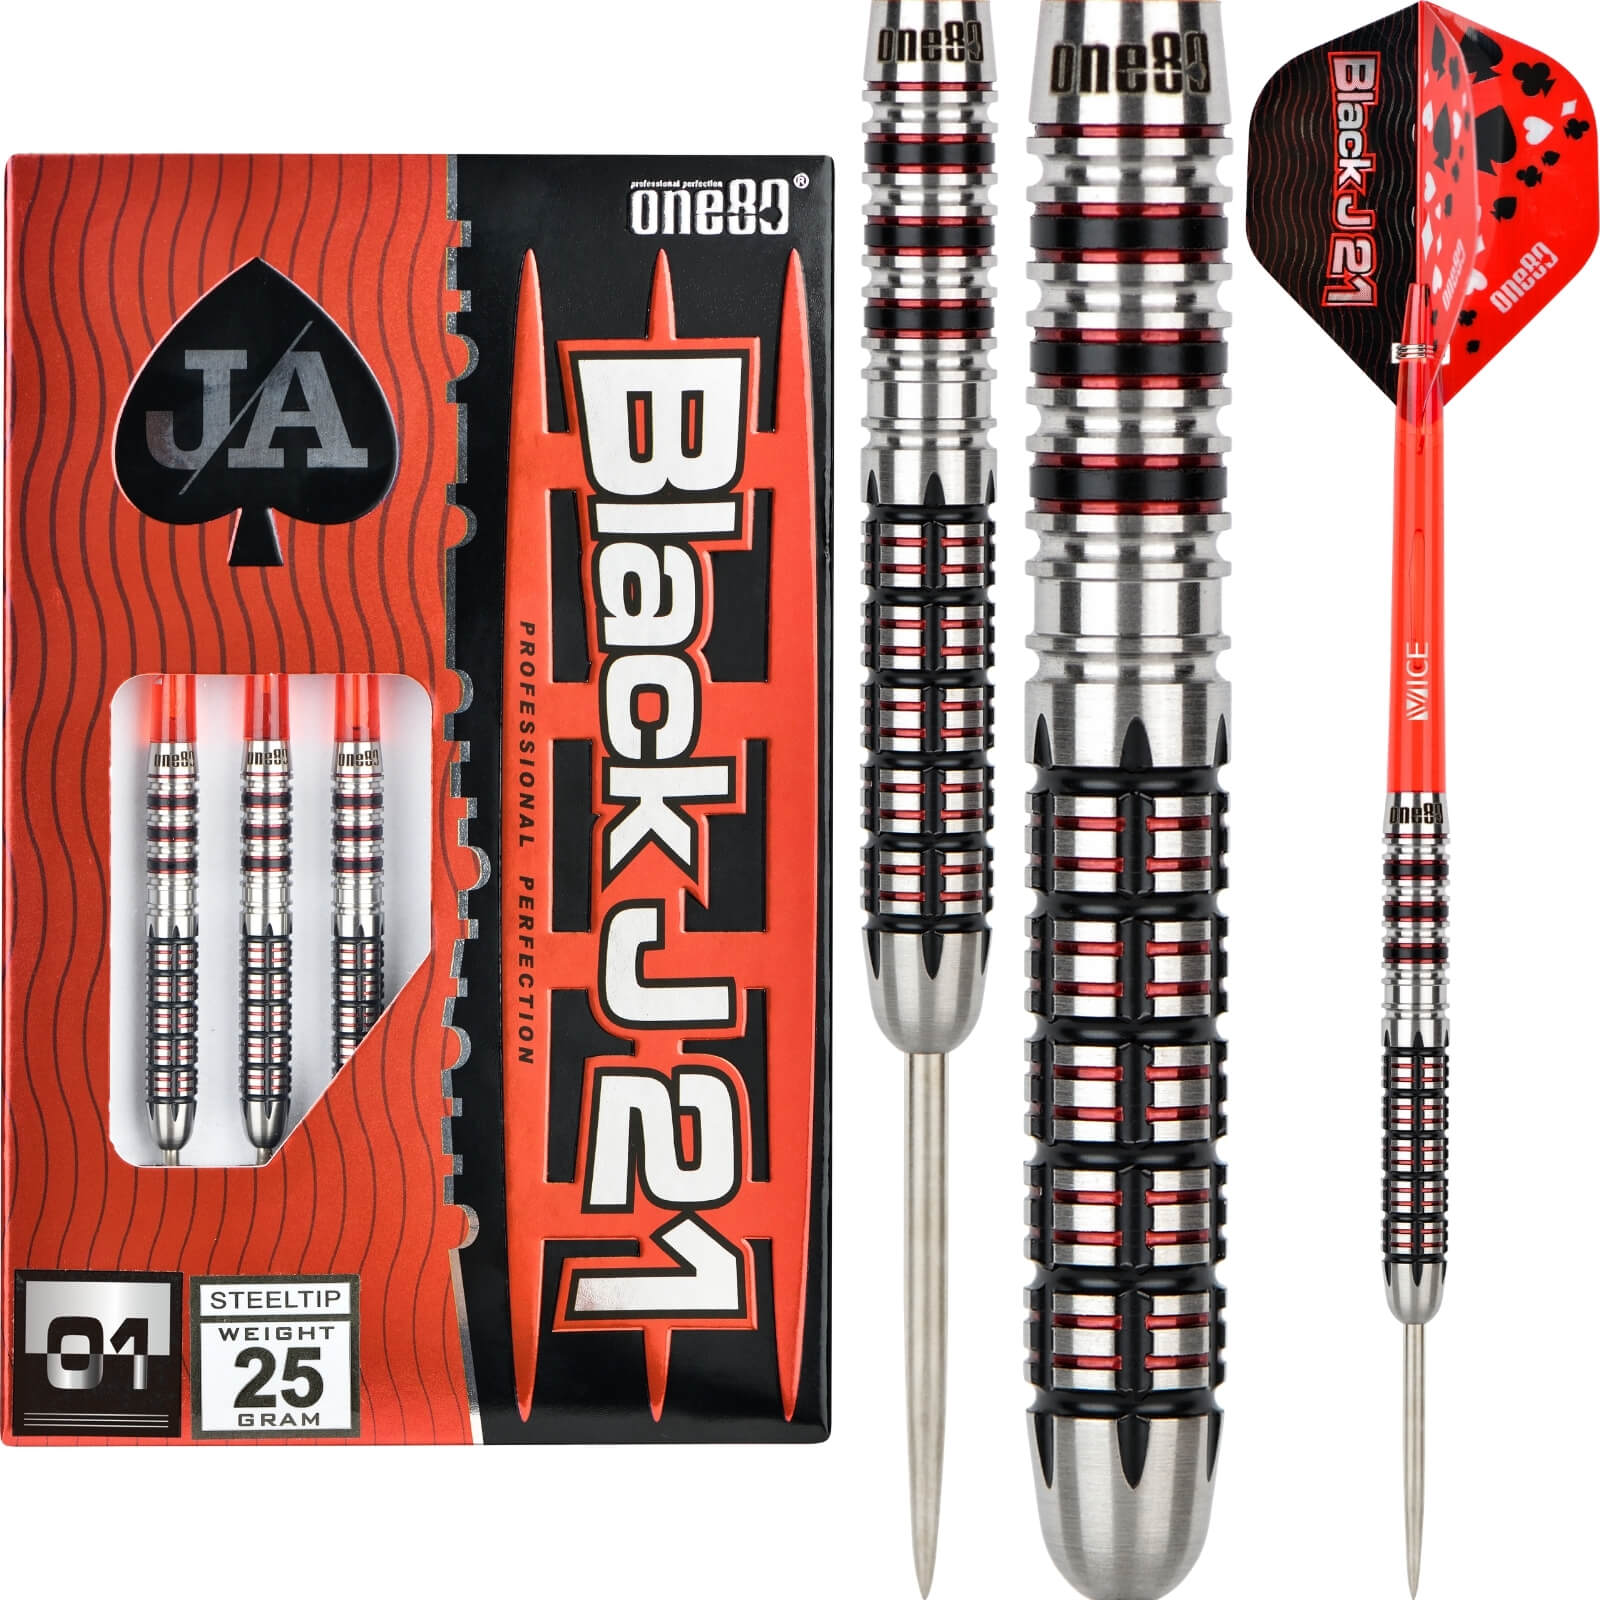 Darts - One80 - Black J21 01 Darts - Steel Tip - 90% Tungsten - 21g 23g 25g 